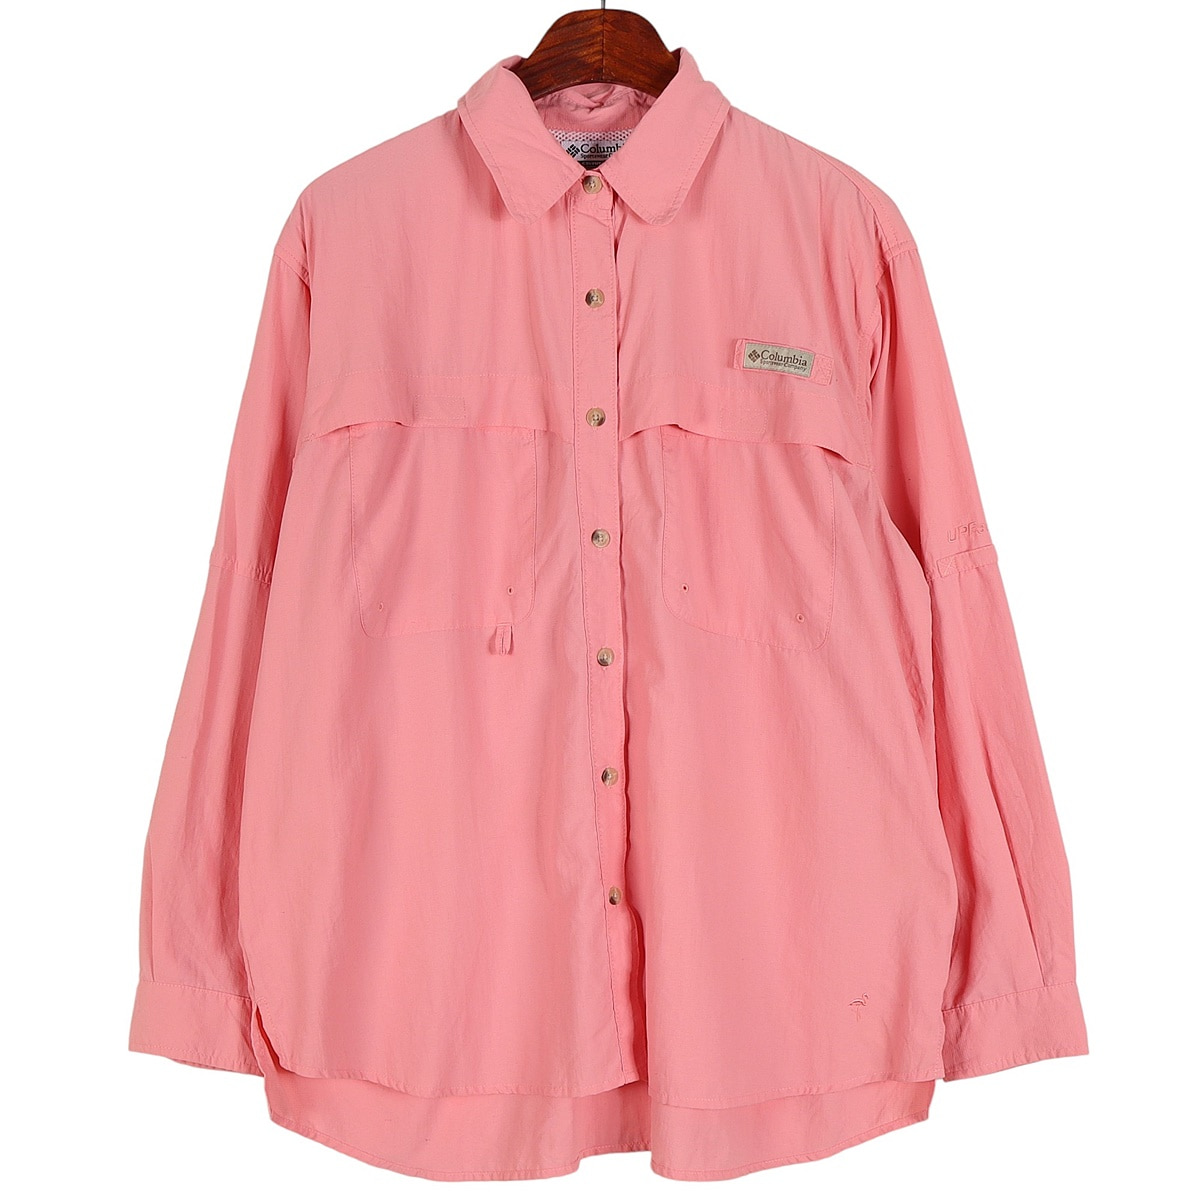 컬럼비아(COLUMBIA) 핑크 PFG 피싱 셔츠 / L